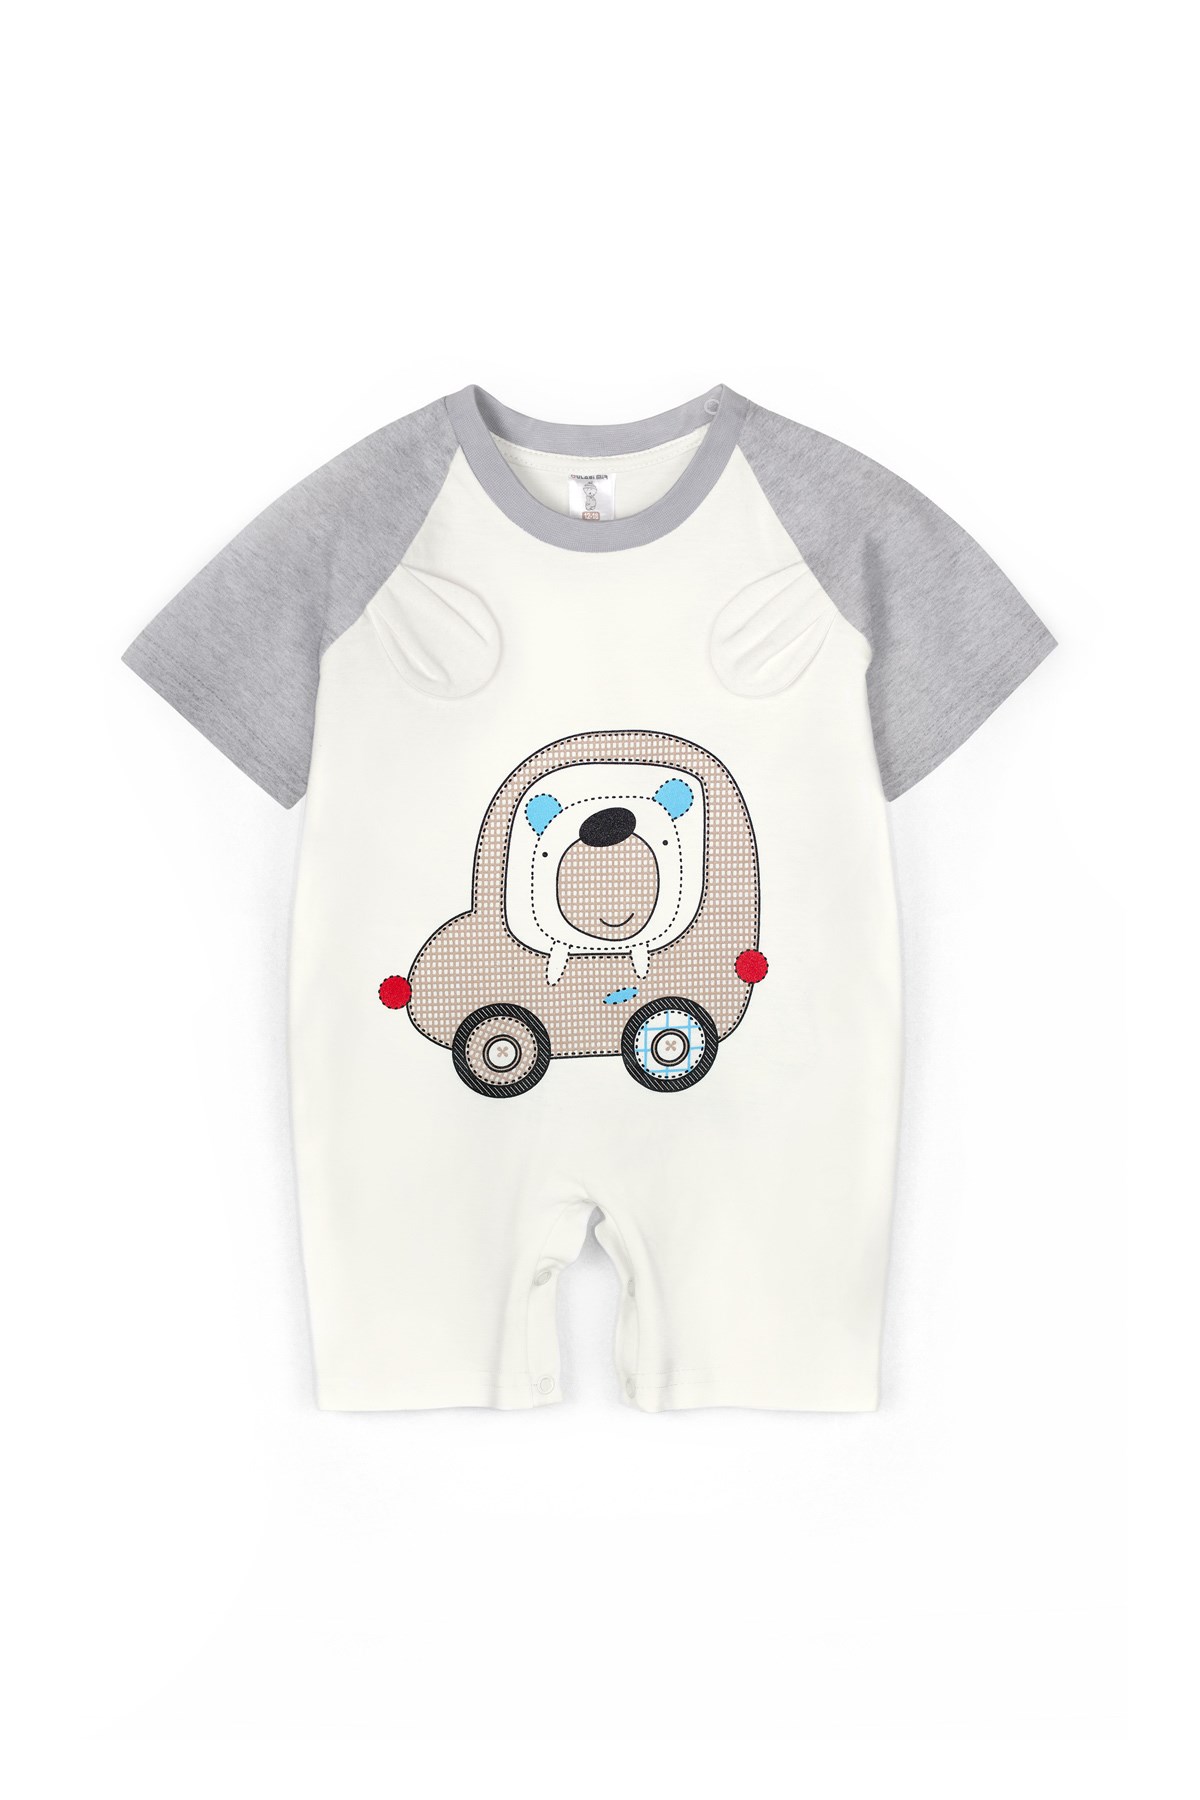 Yazlık Araba Nakışlı Şortlu Bebek Tulum Modeli ve Fiyatı – Oulabi Mir